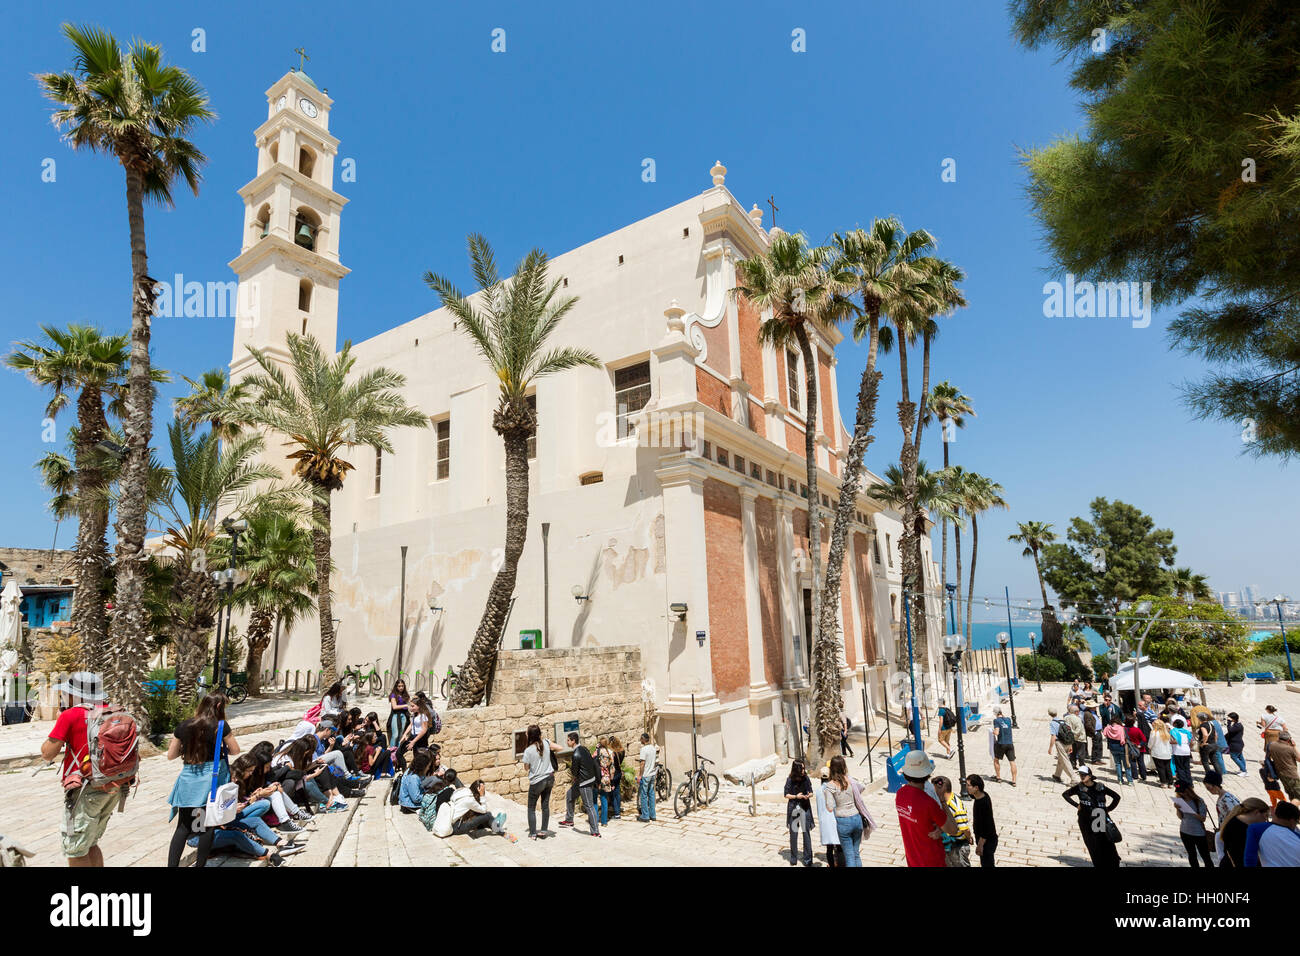 JAFFA, Tel Aviv, Israele - Aprile 4, 2016: persone su di una piazza presso la chiesa di San Pietro in Vecchia Jaffa, Israele. La chiesa francescana è stata costruita nel 1654 ho Foto Stock